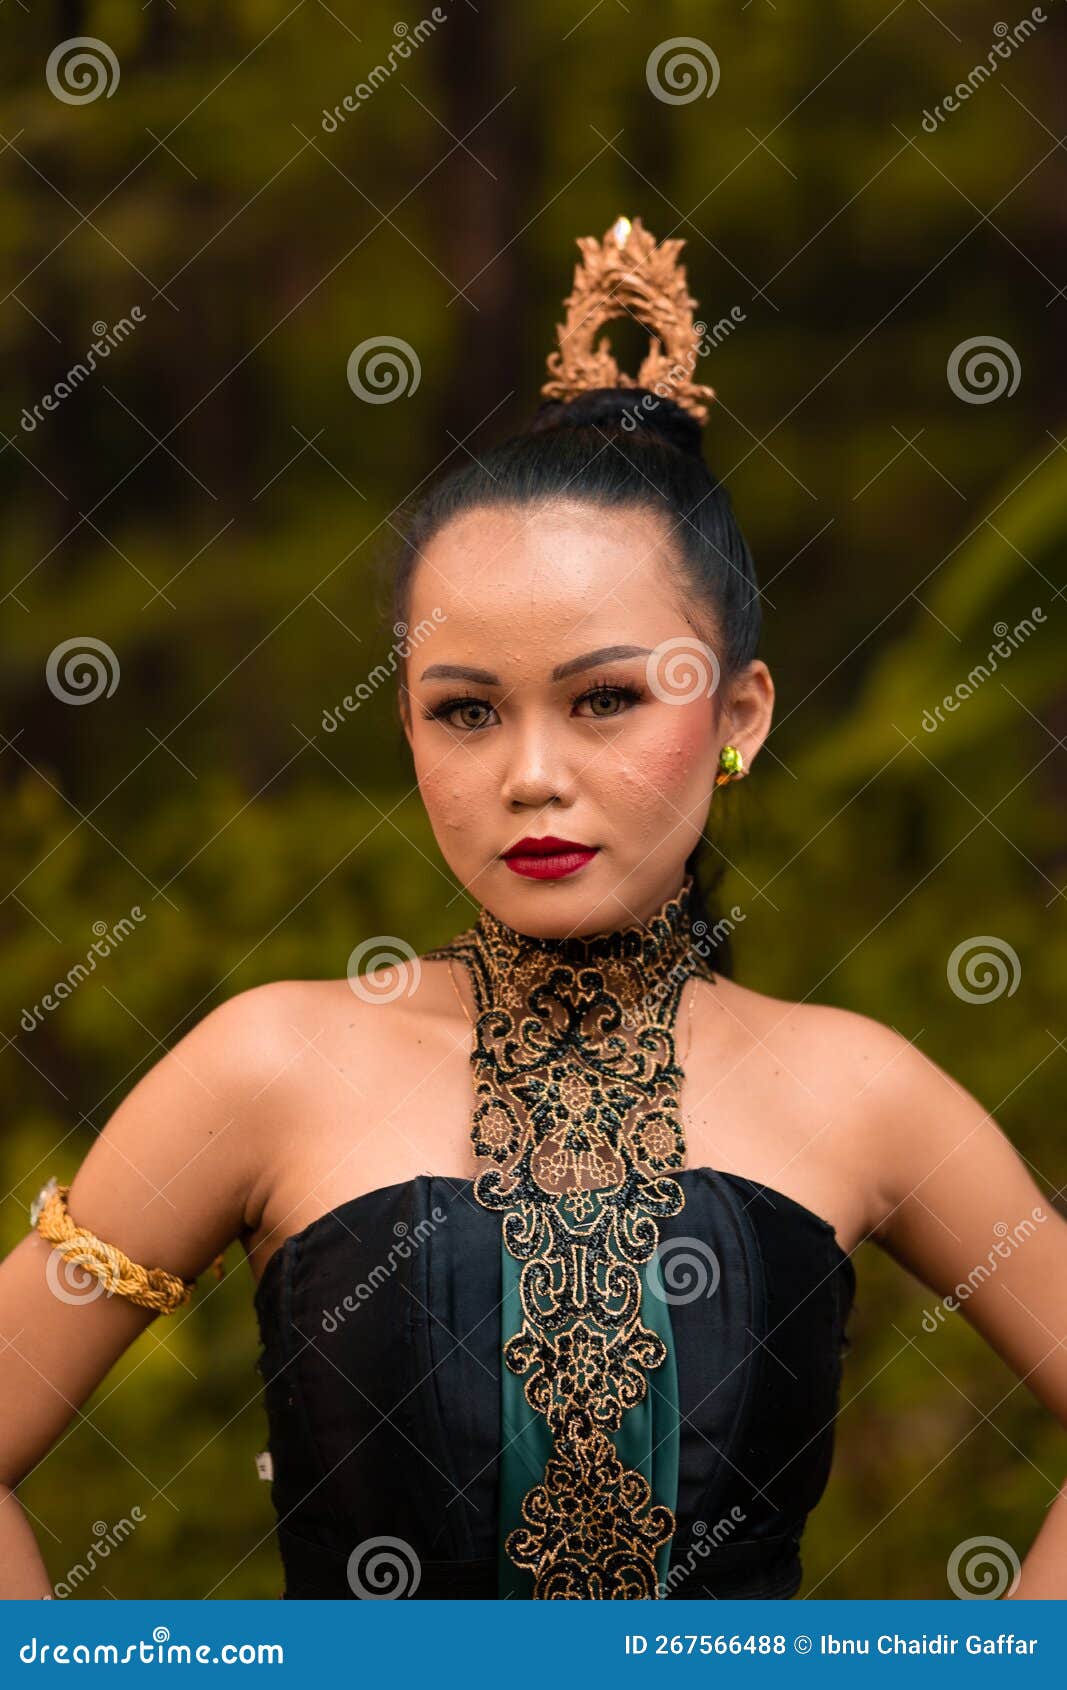 Bali Bracelets/Anklet – Payton Jewelry